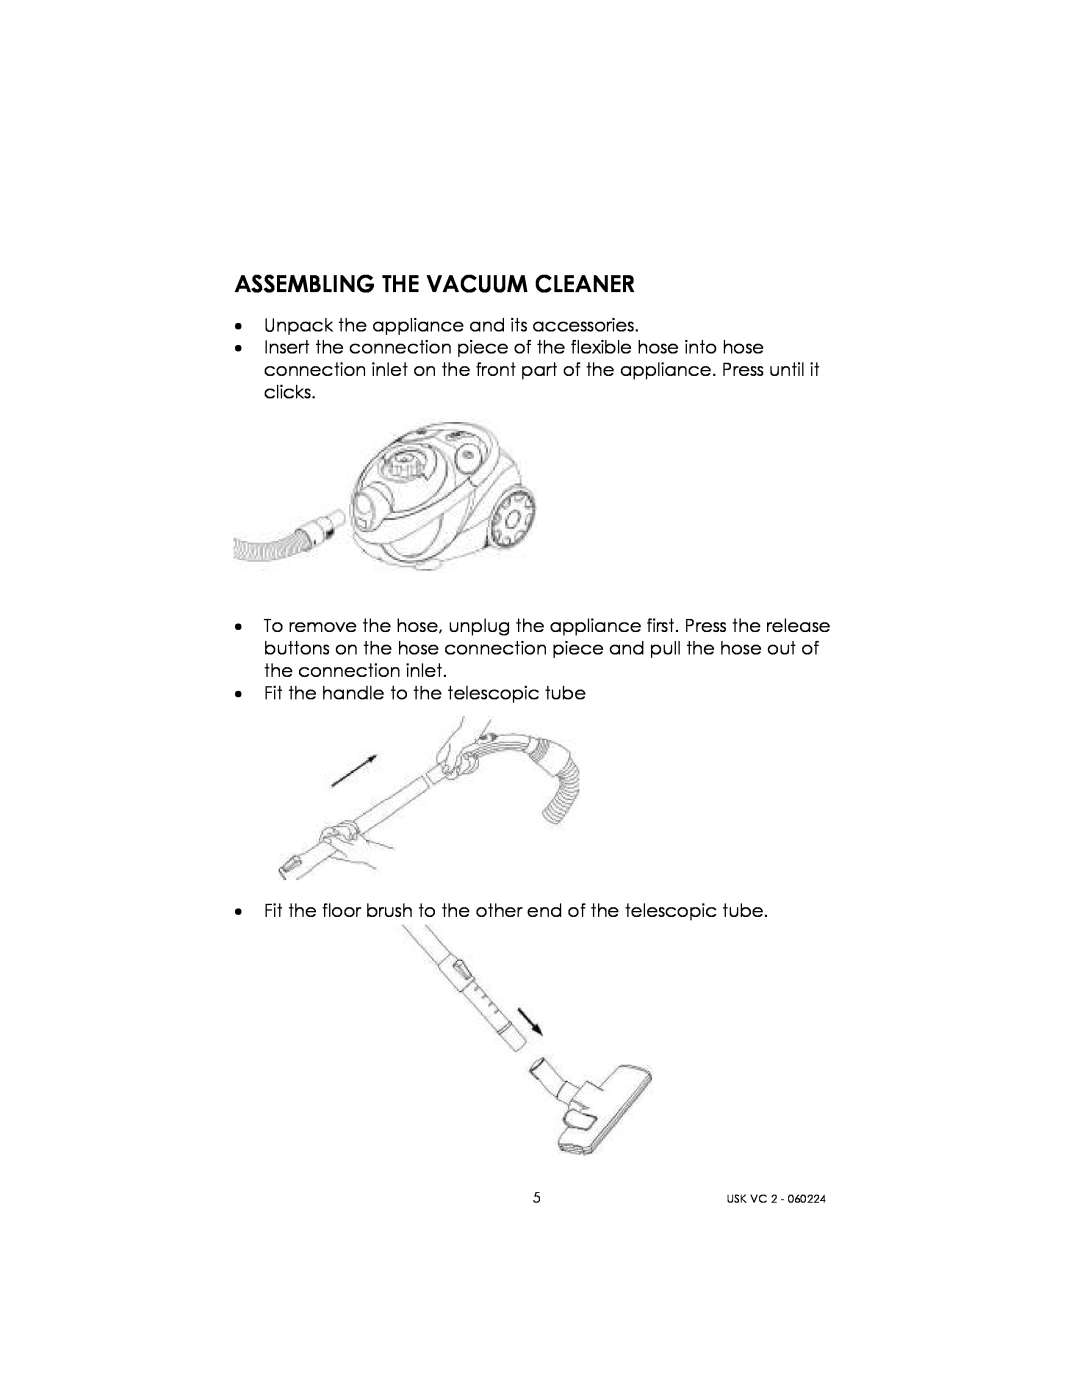 Kalorik USK VC 2 manual Assembling The Vacuum Cleaner 